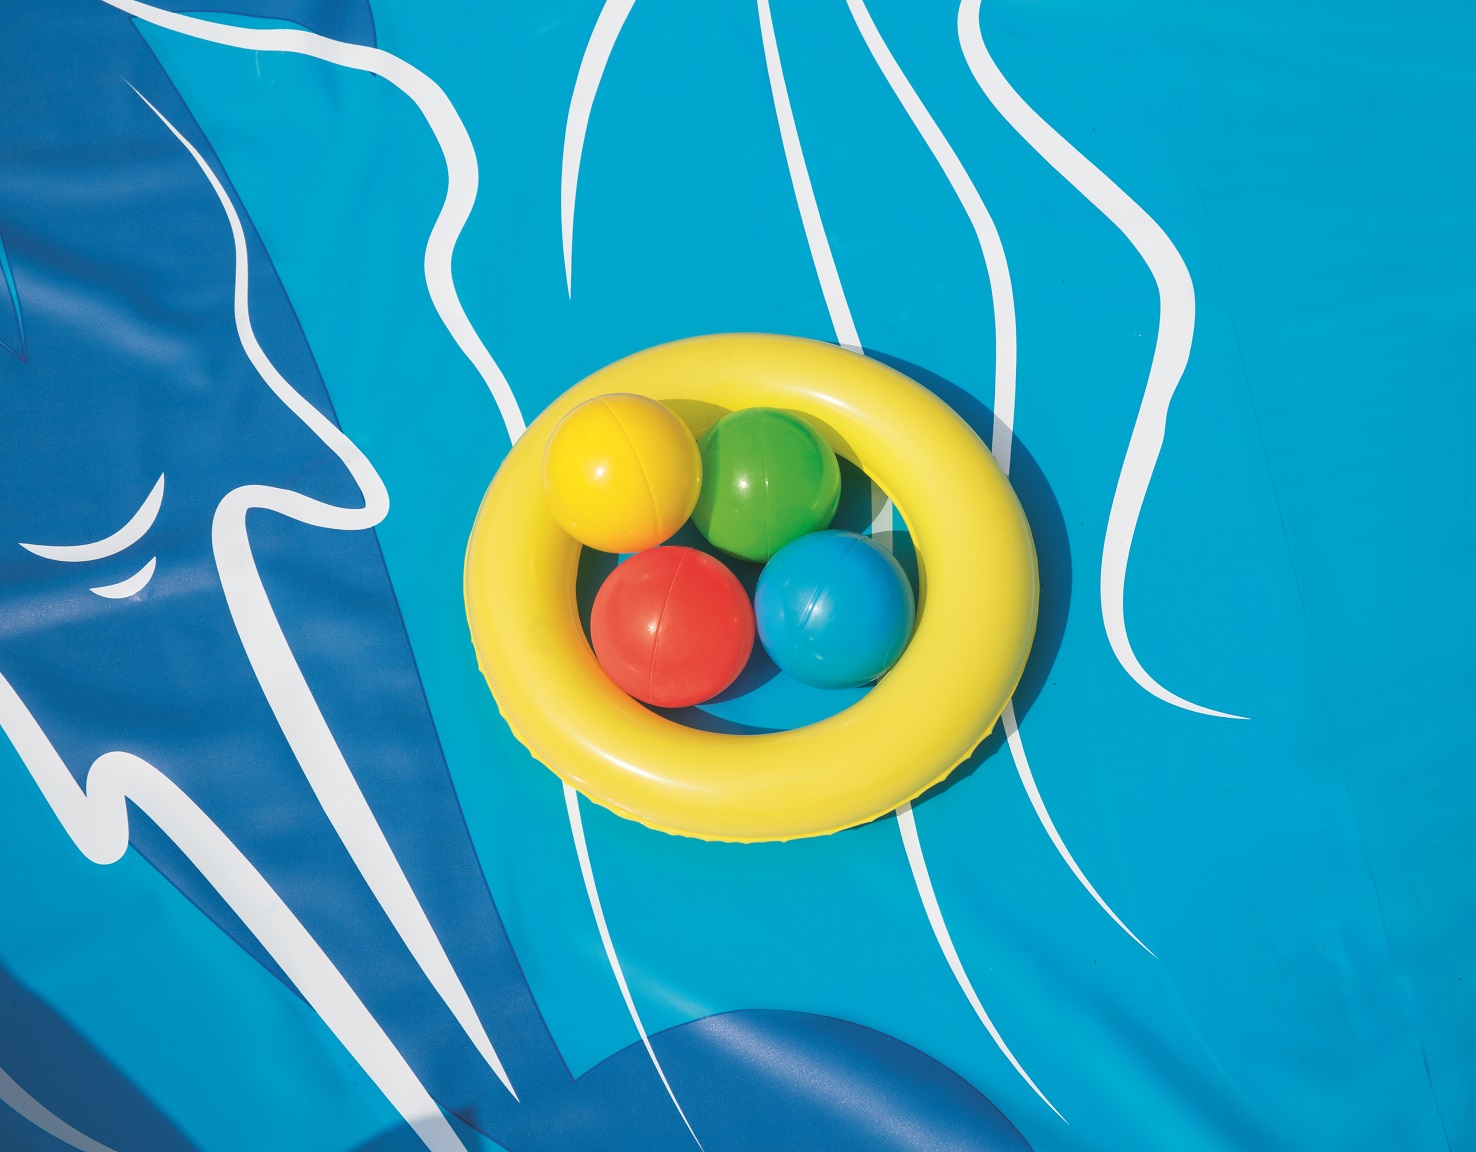 Игровой бассейн Вулкан с горкой, подушкой, кольцом и 4 шариками, 265 х 265 х 104 см., 208 литров  